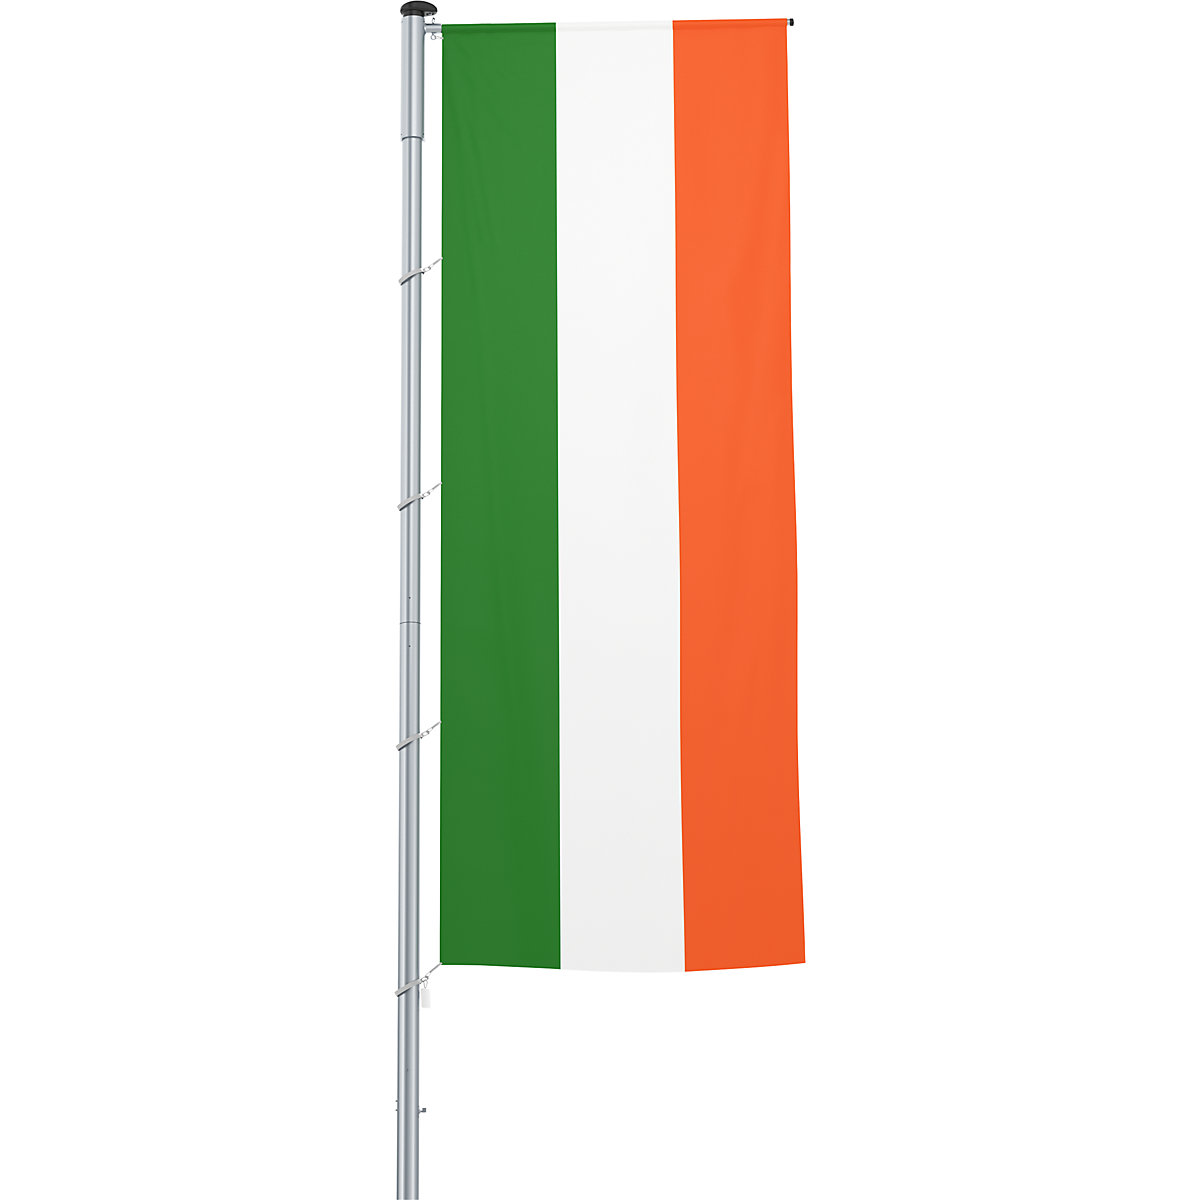 Vlajka na pozdĺžne upevnenie na stožiar/národná vlajka – Mannus, formát 1,2 x 3 m, Írsko-8